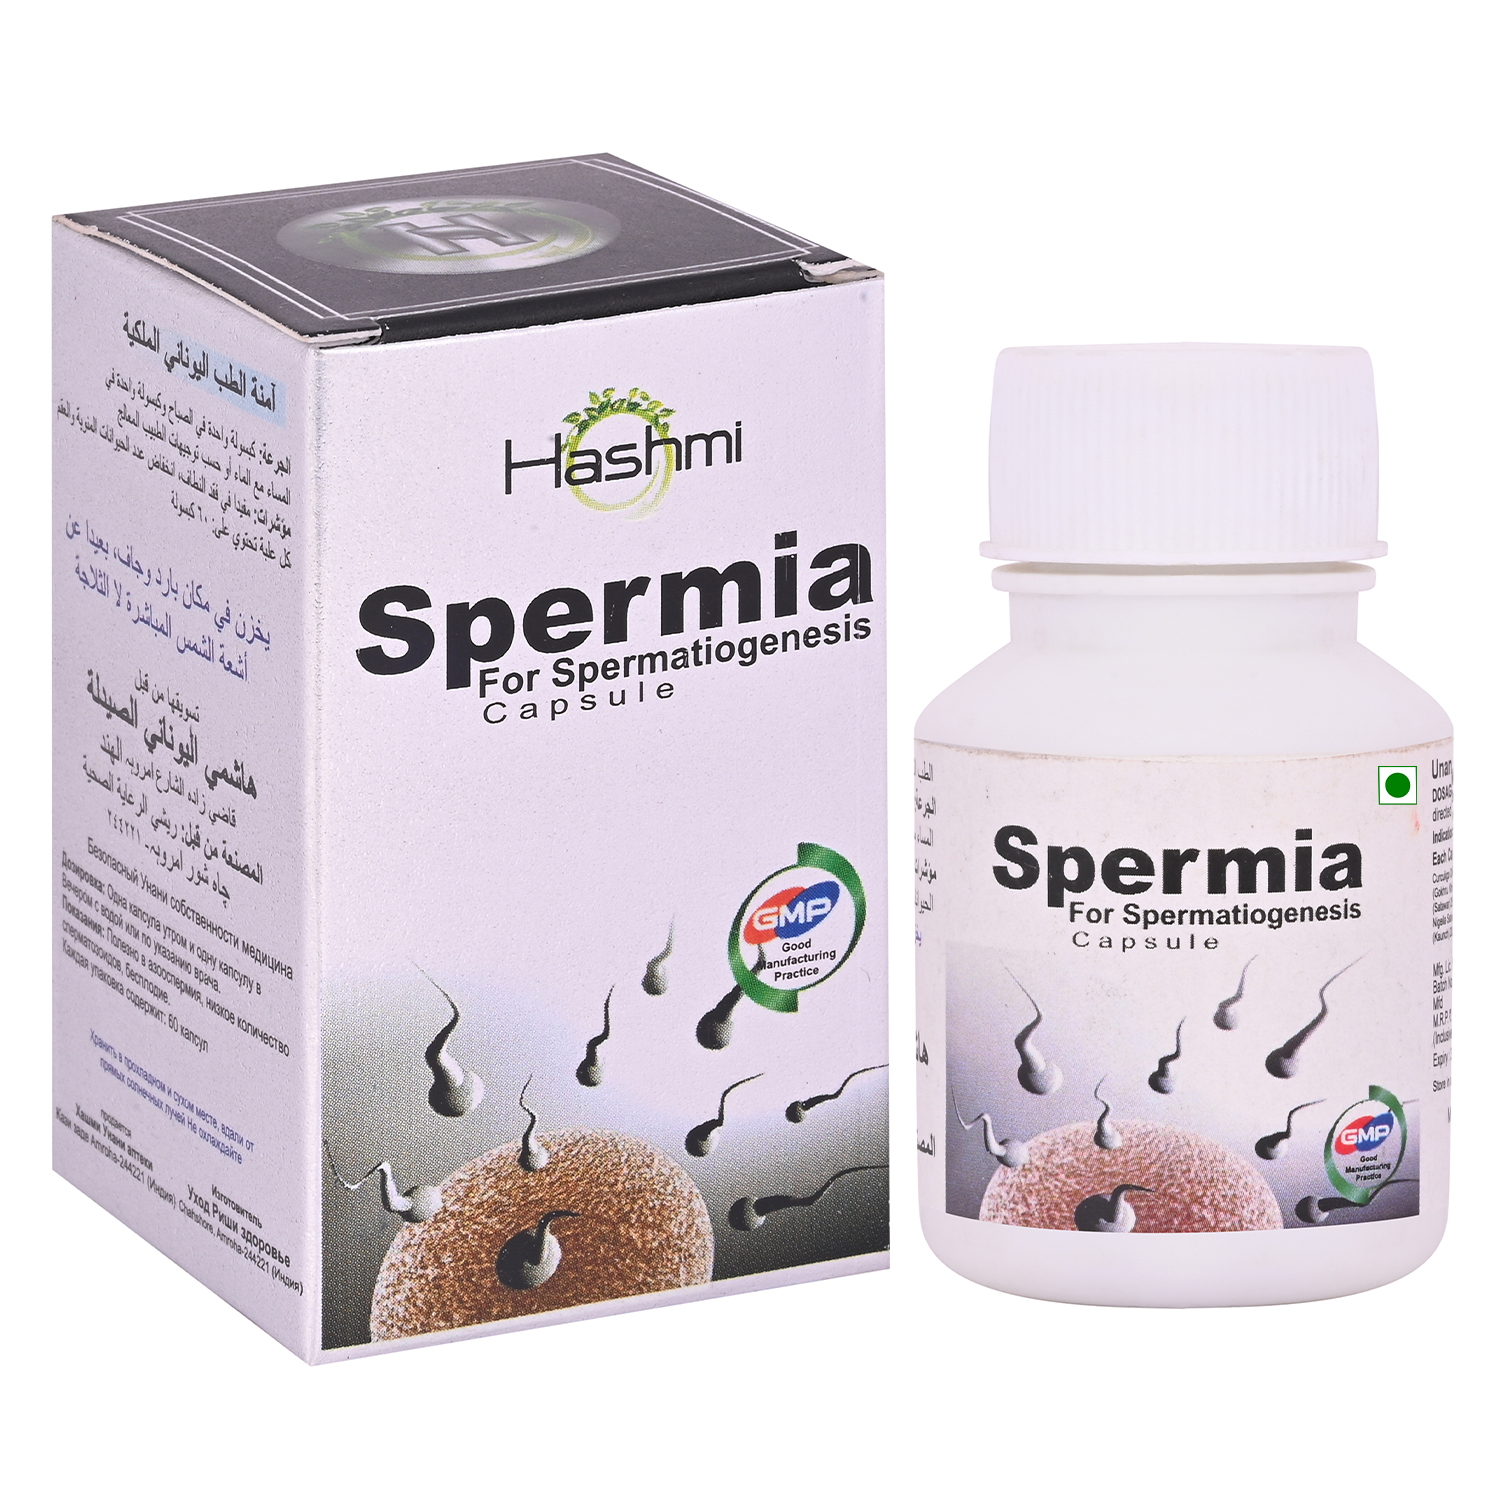 spermia capsule front